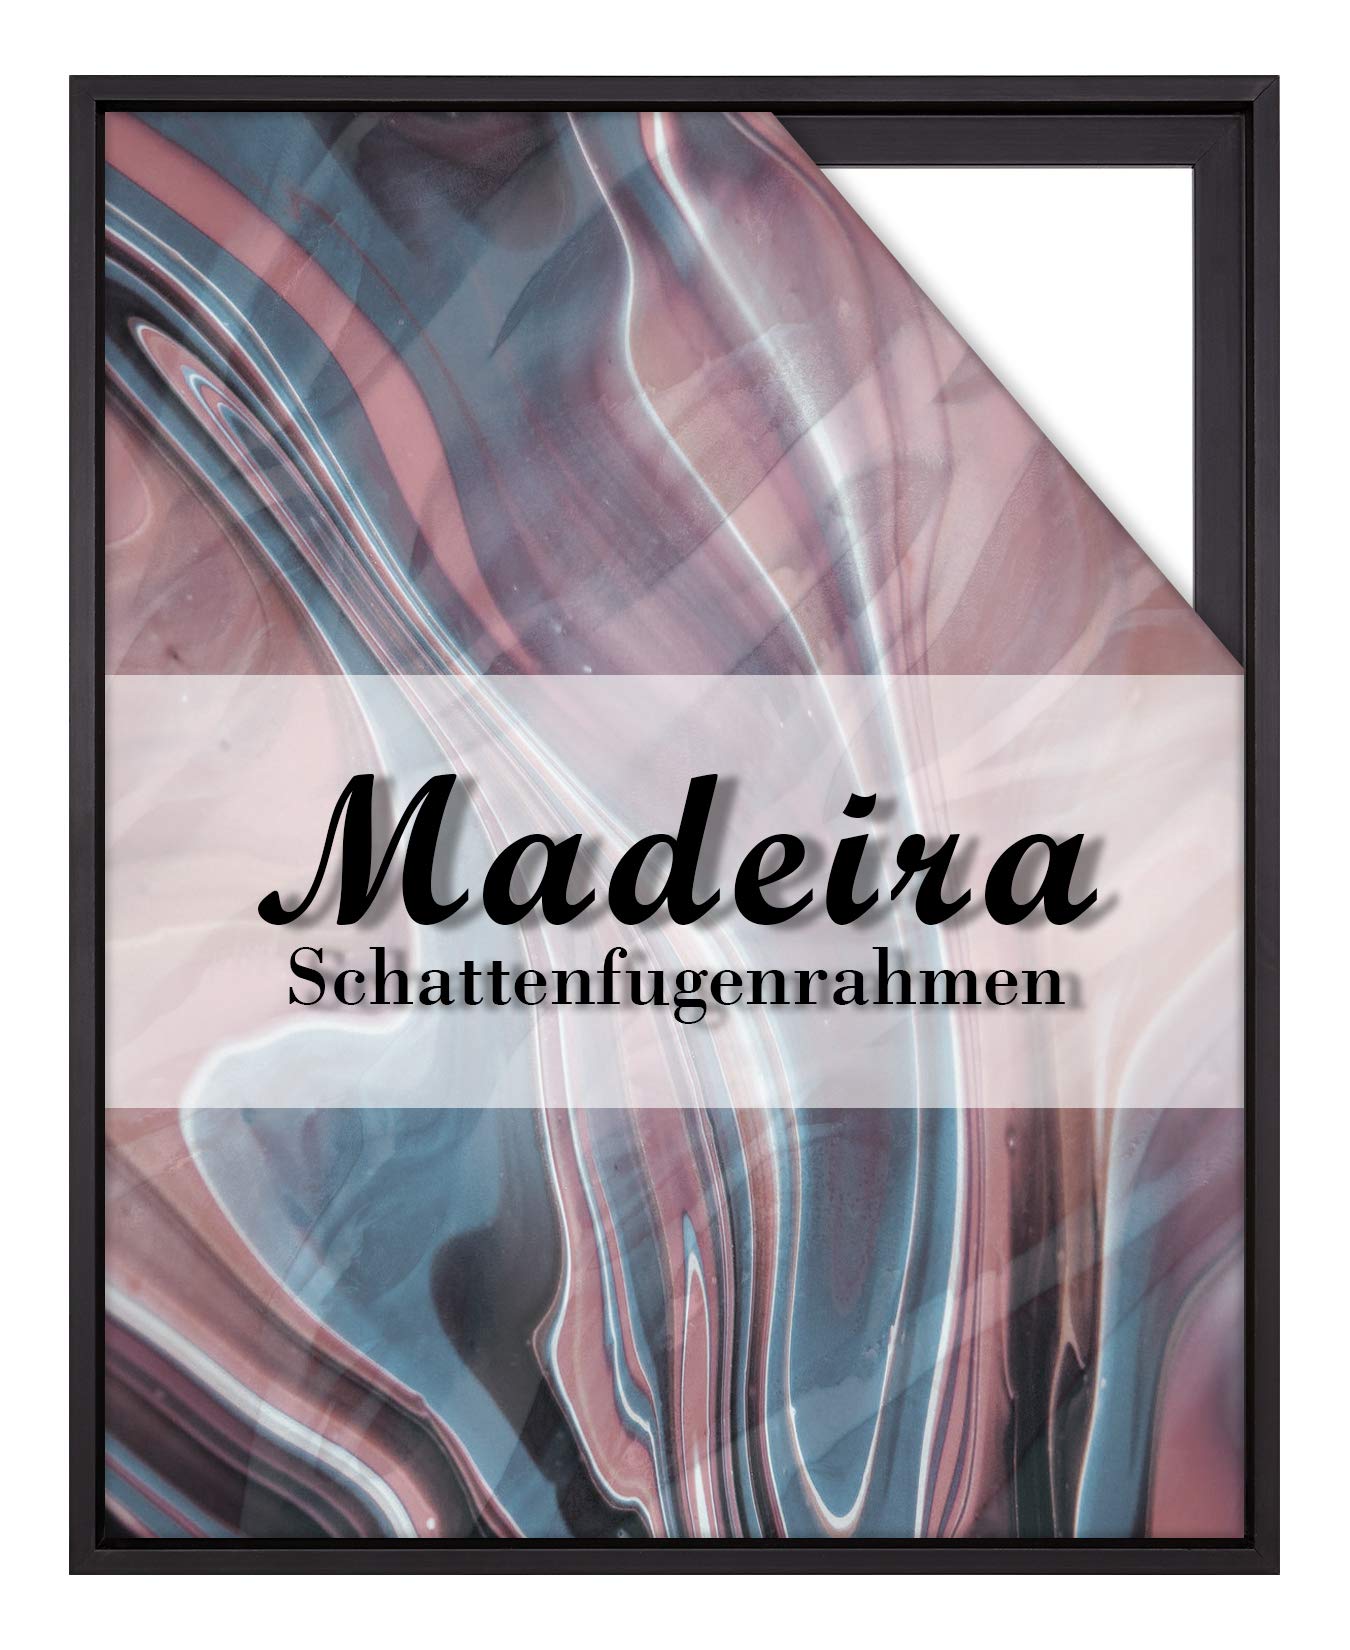 BIRAPA Madeira Schattenfugenrahmen für Leinwand 50x60 cm in Schwarz, Holzrahmen, Rahmen für Leinwände, Leerrahmen für Leinwand, Schattenfugenrahmen für Keilrahmen